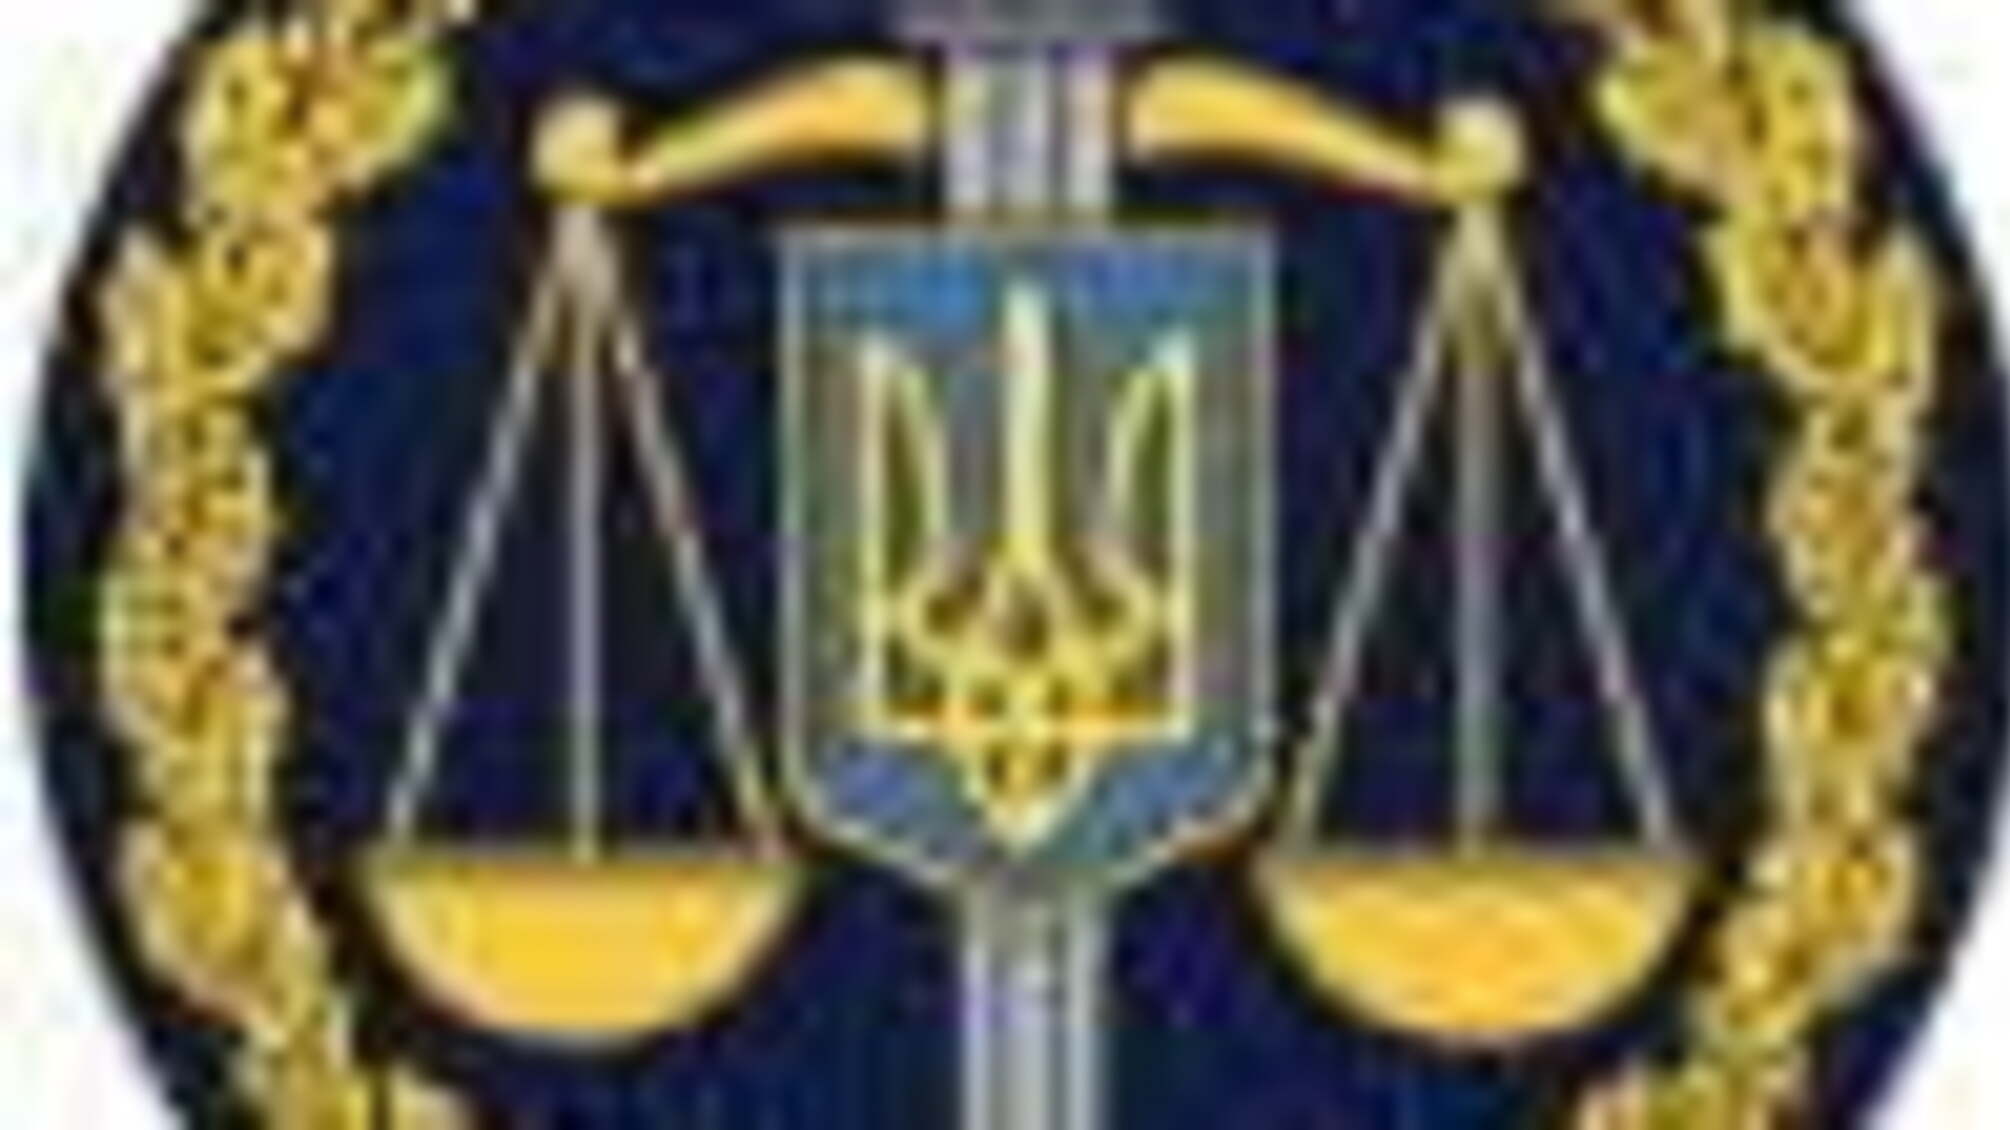 Невиконання судового рішення службовими особами КП «Благоустрій»: прокуратура розпочала кримінальне провадження